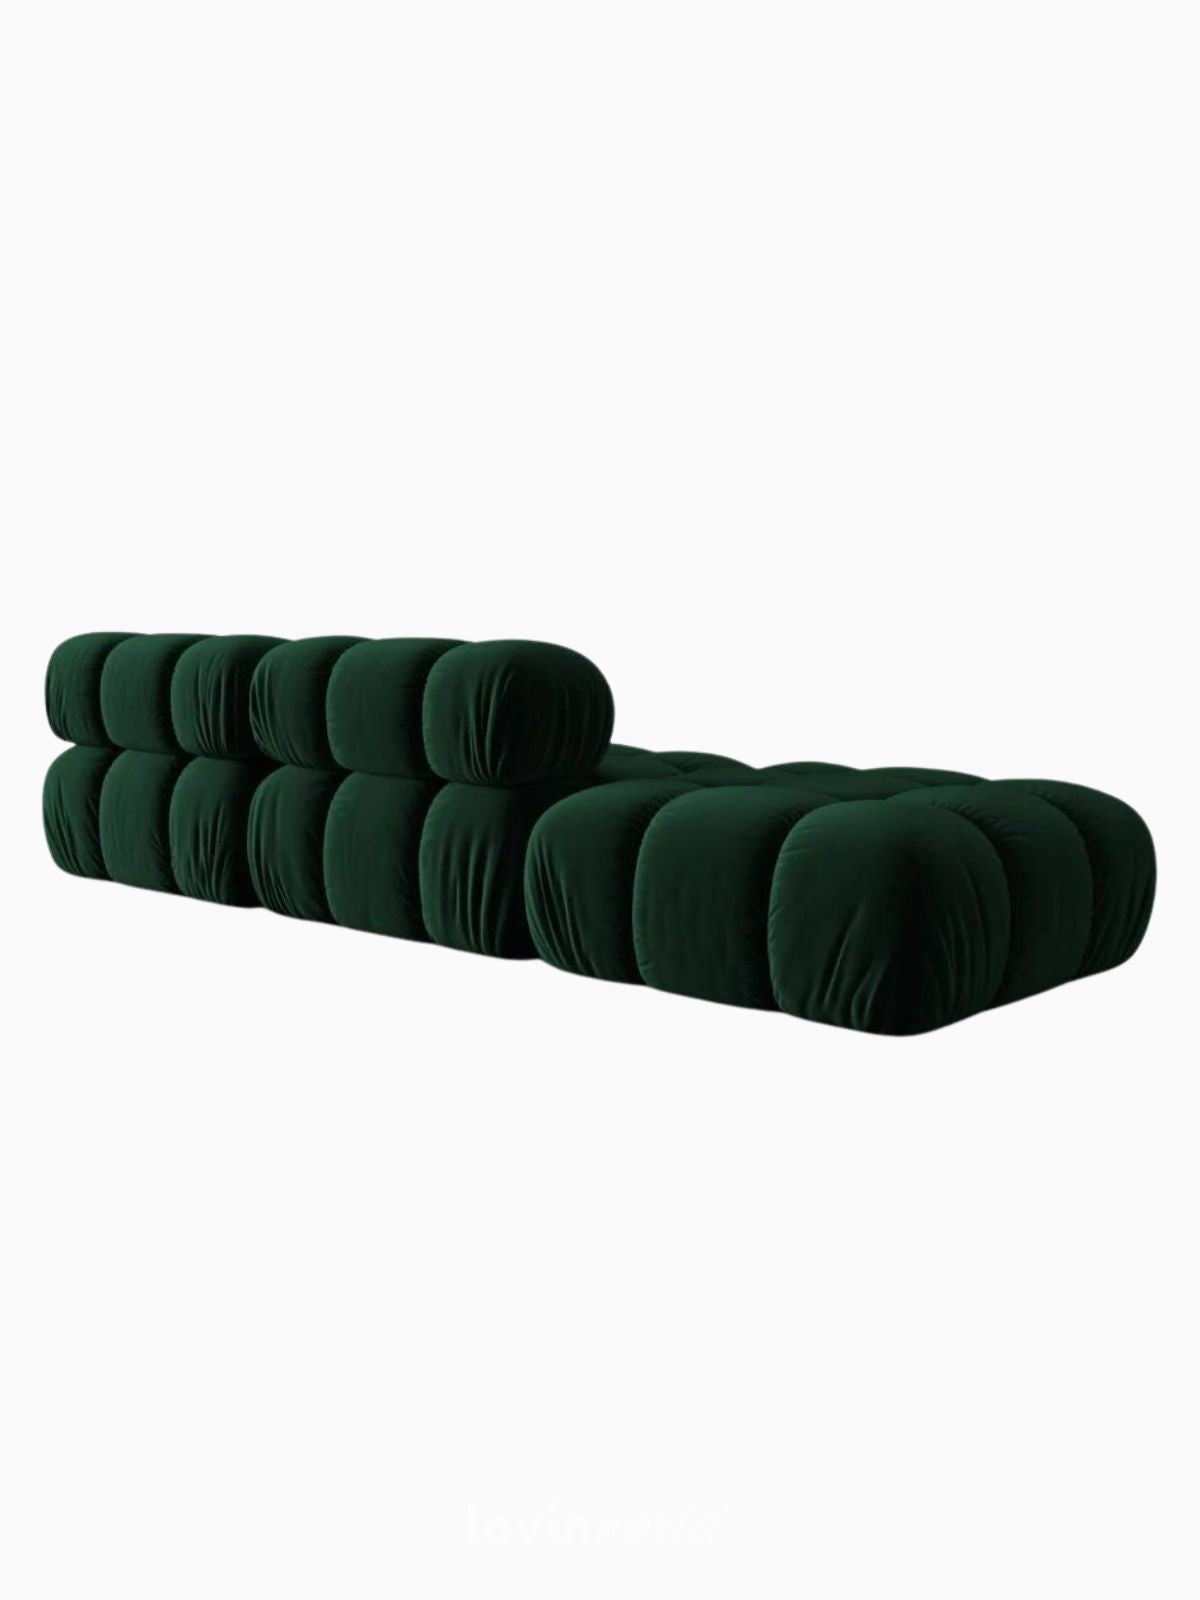 Divano modulare 4 sedute Bellis in velluto, colore verde-5